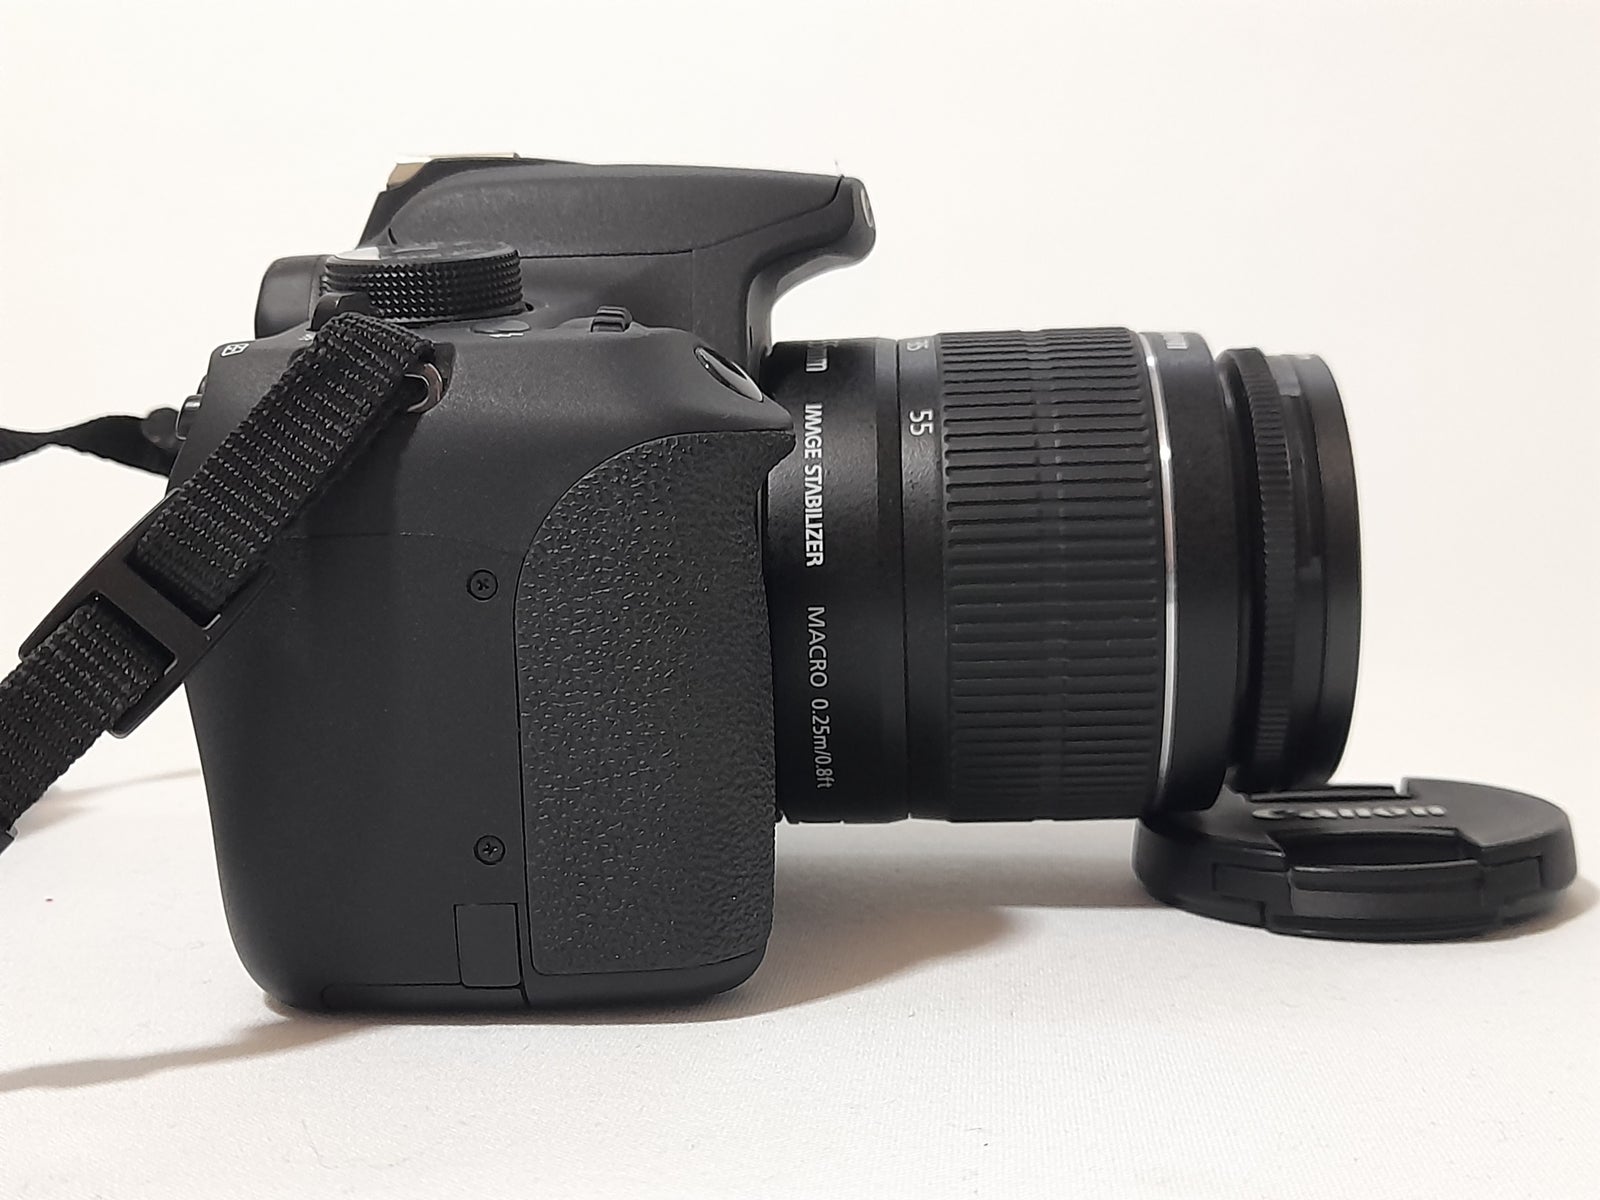 Canon, Canon EOS 1200D, 18 megapixels